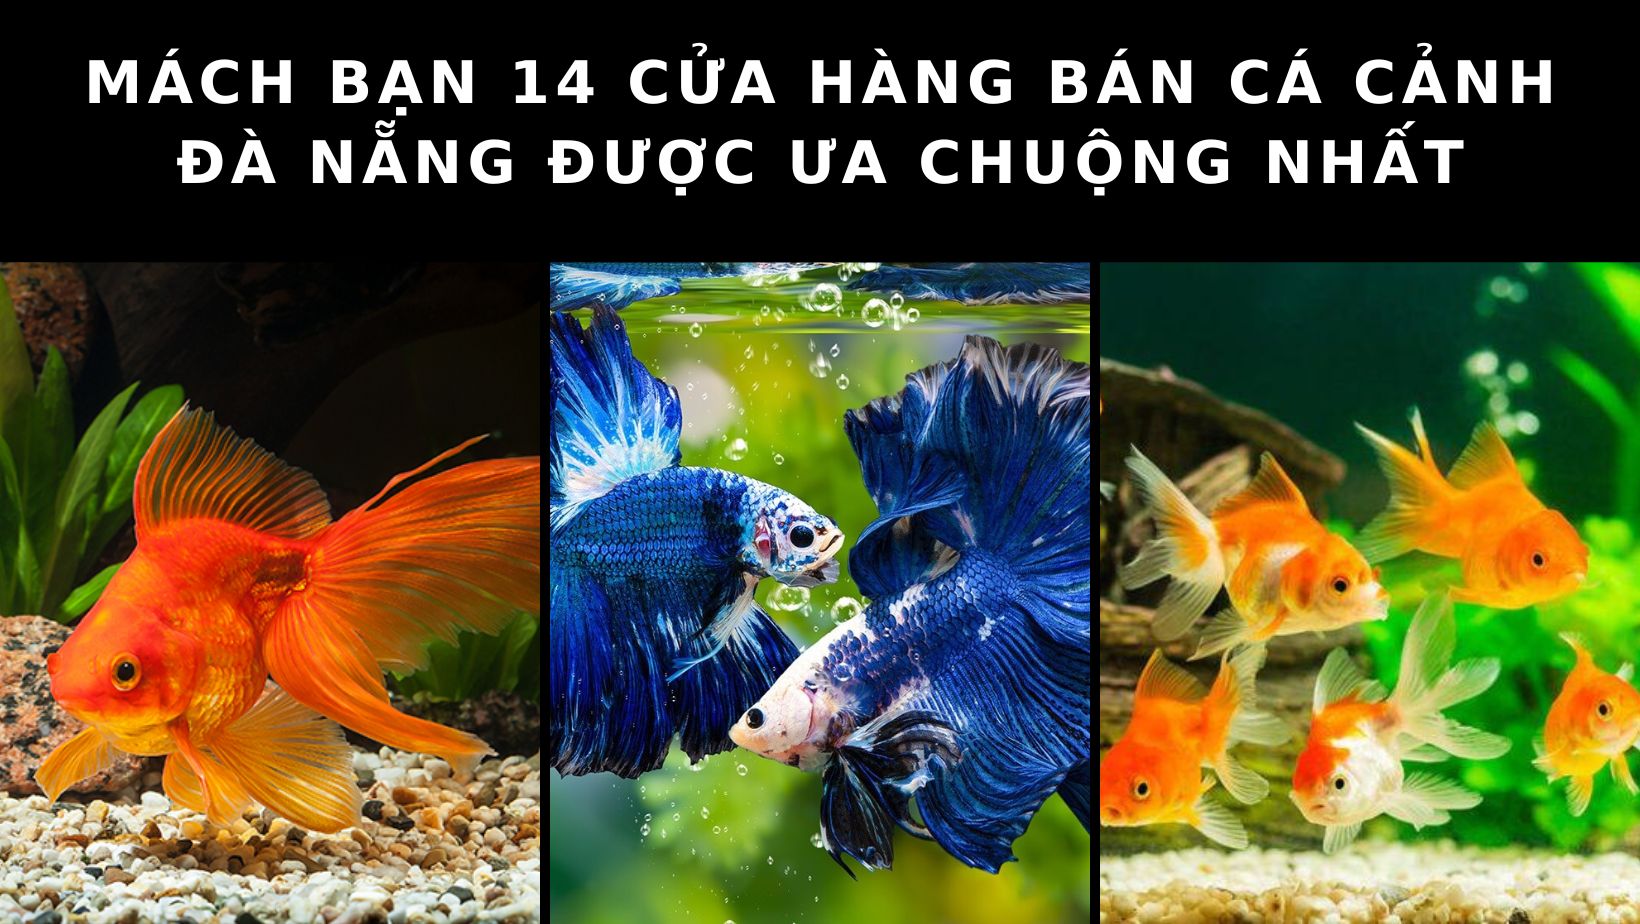 Cửa hàng bán cá cảnh Đà Nẵng: Bật mí 14 cửa hàng bán cá cảnh uy tín nhất